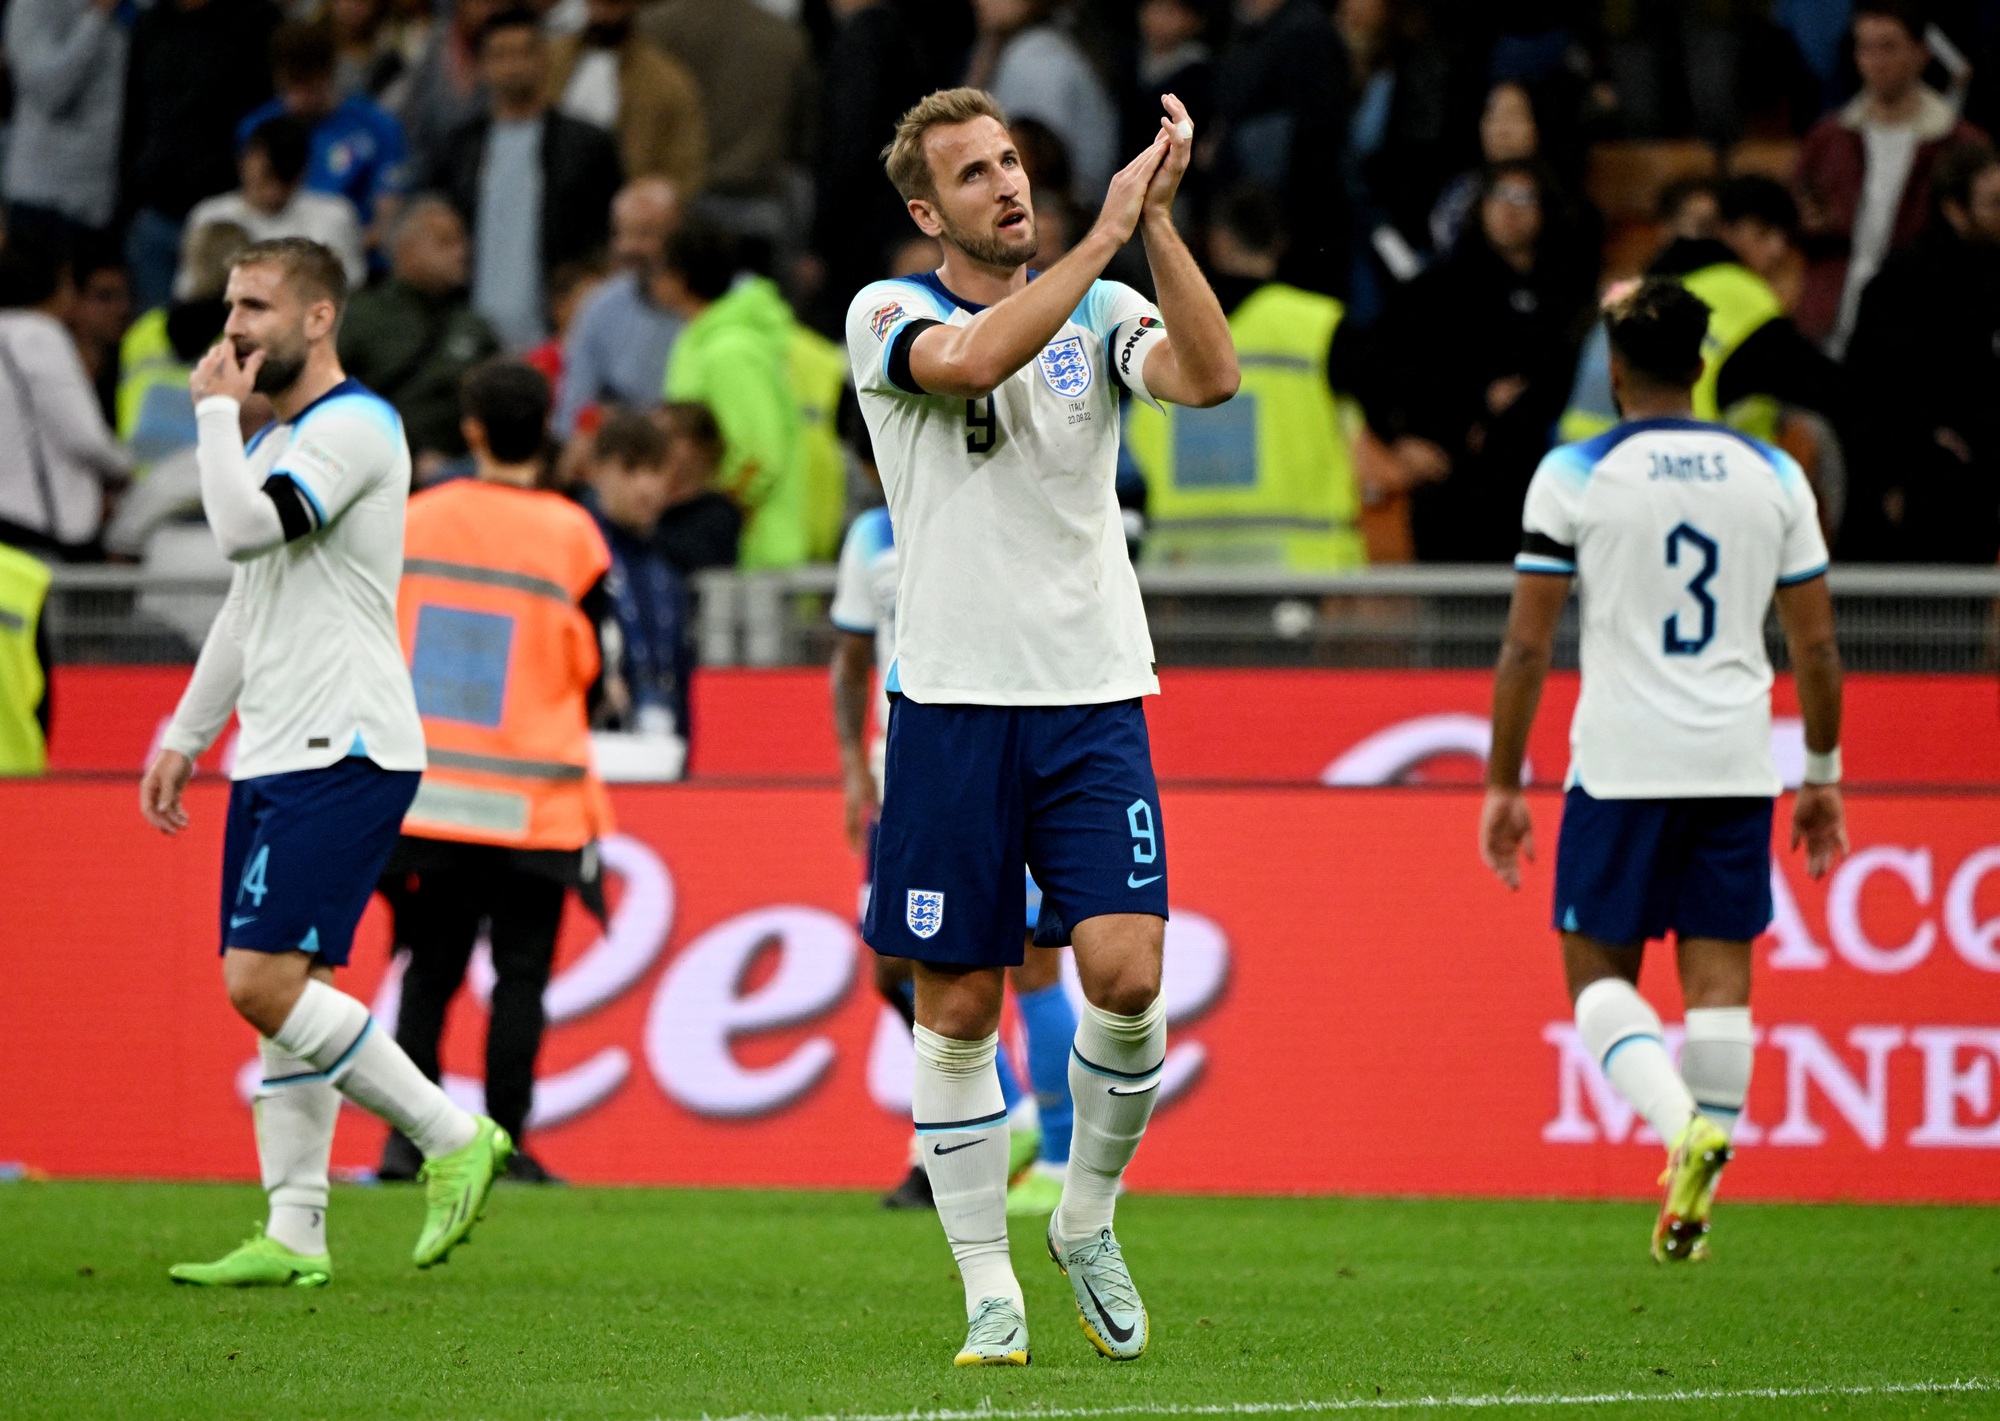 Thua sốc trên đất Ý, tuyển Anh rớt hạng Nations League - Ảnh 5.